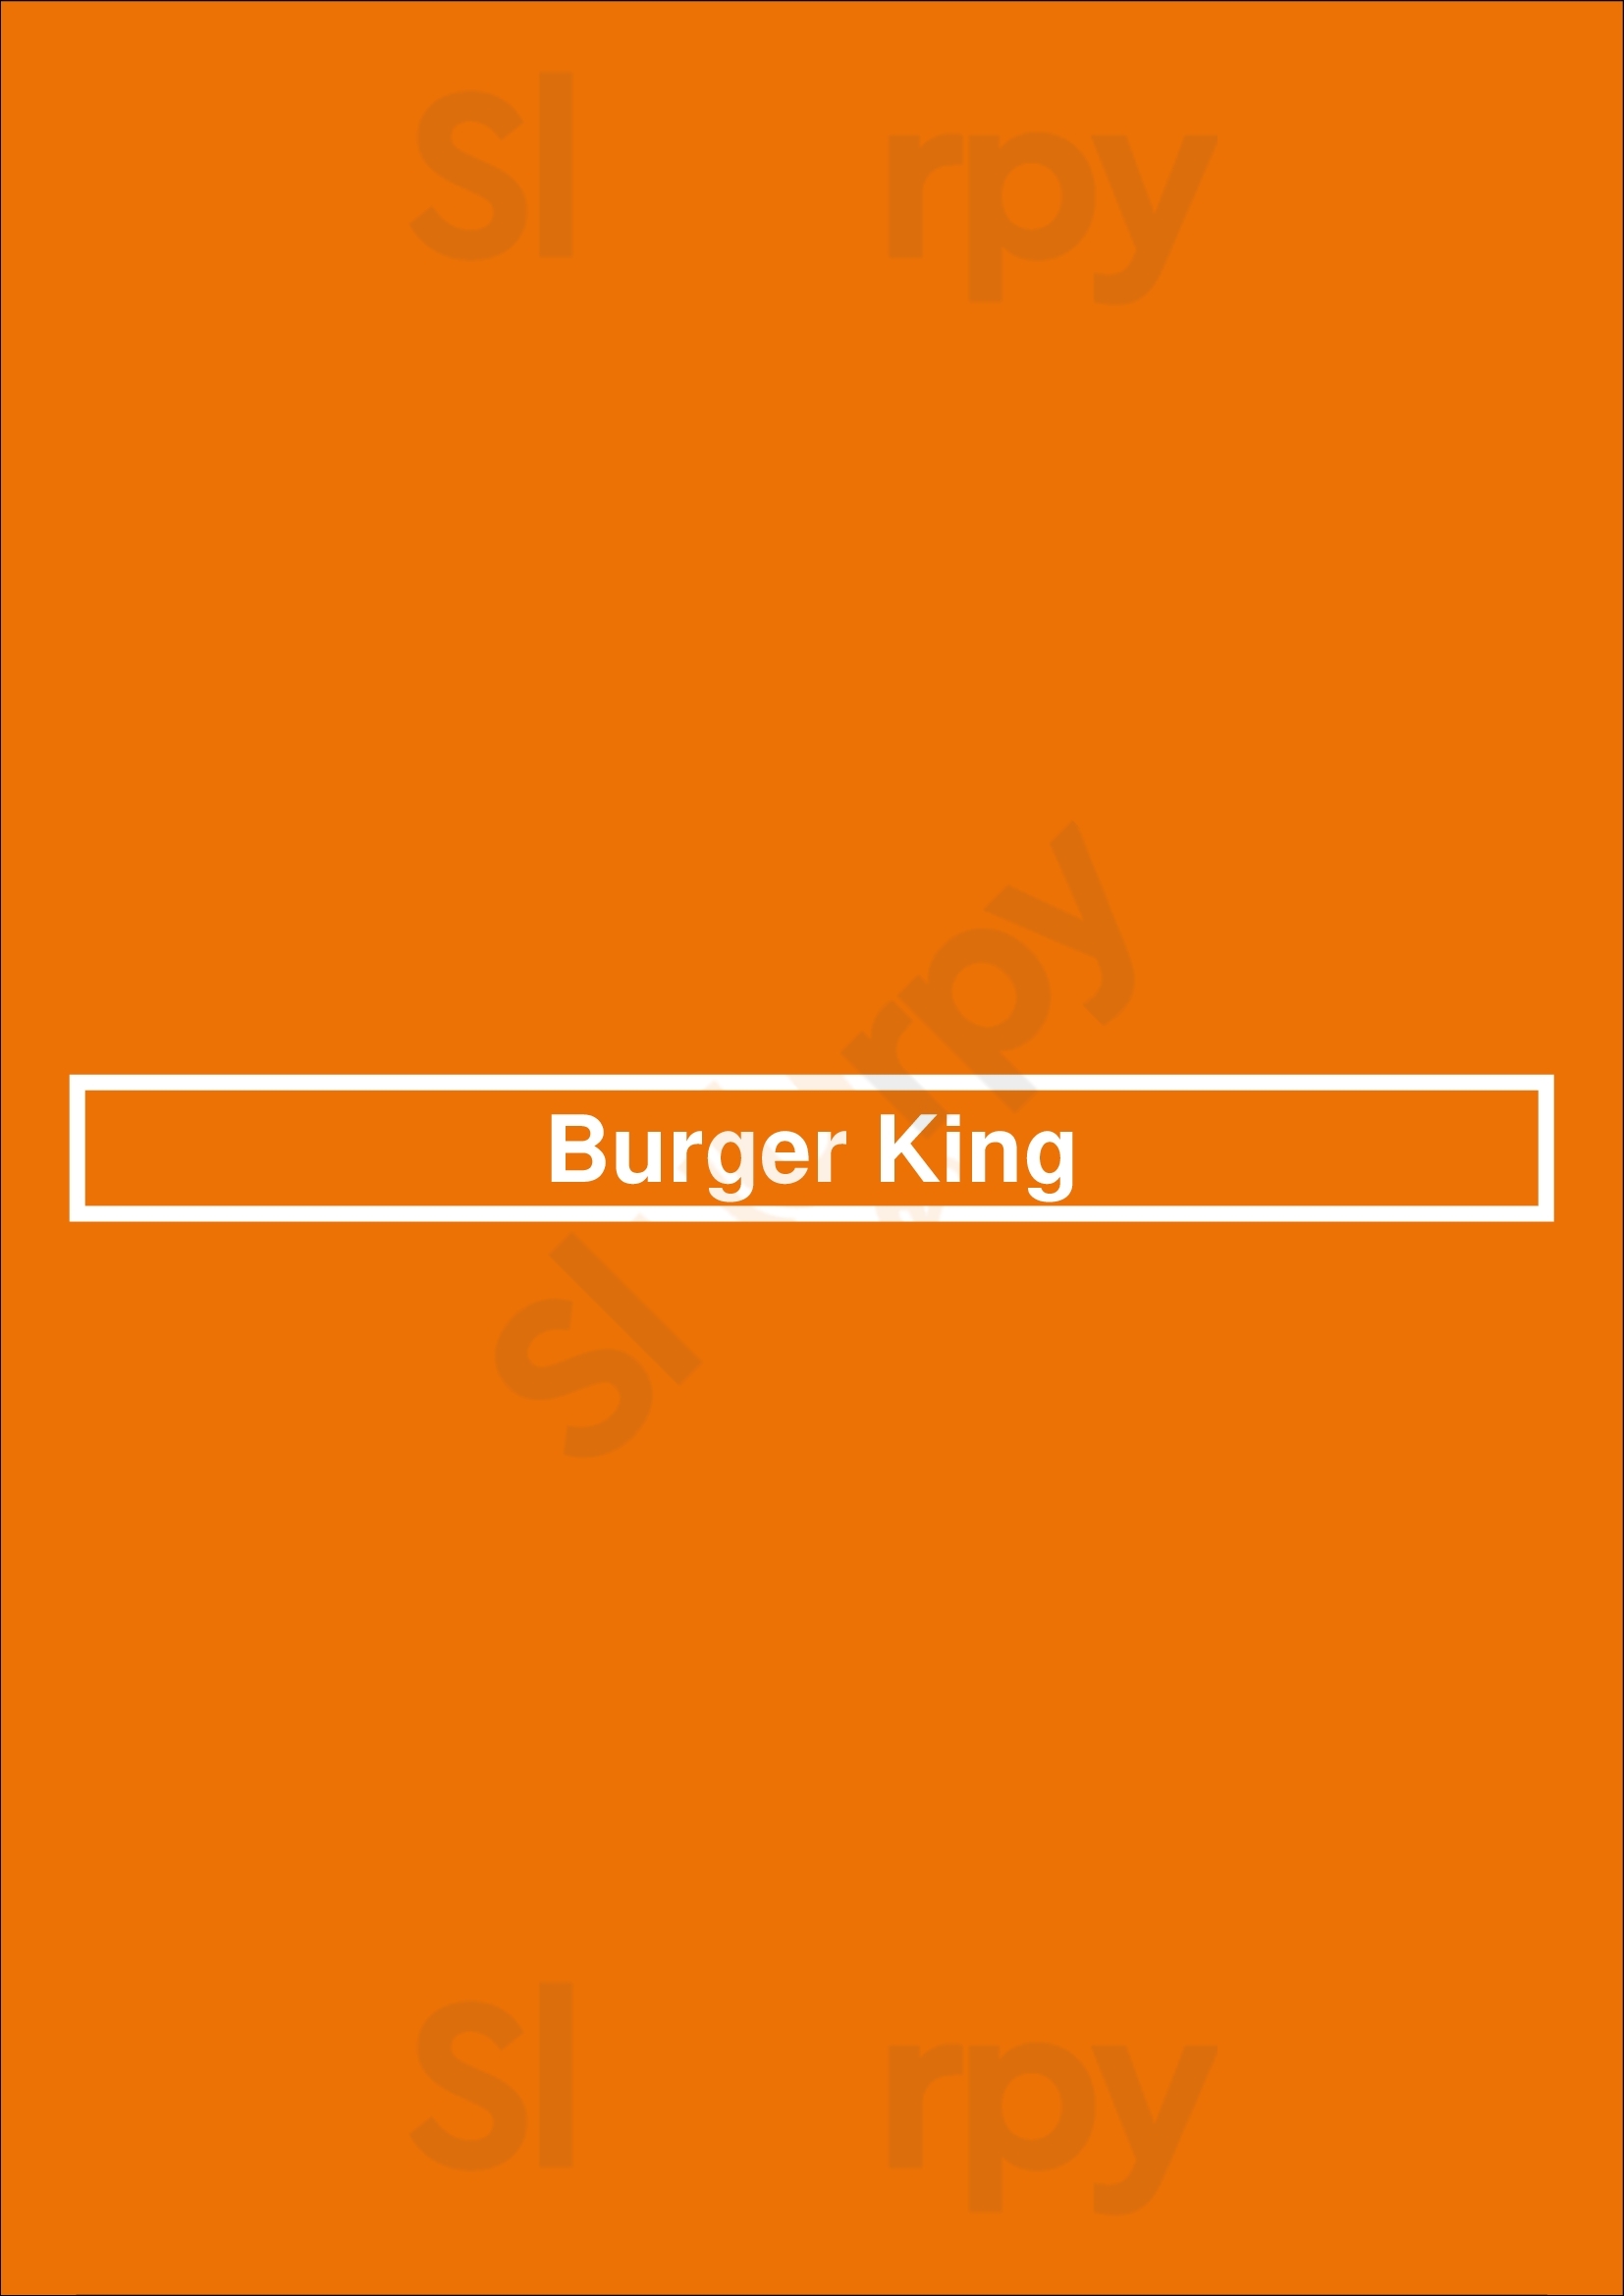 Burger King Addison Menu - 1